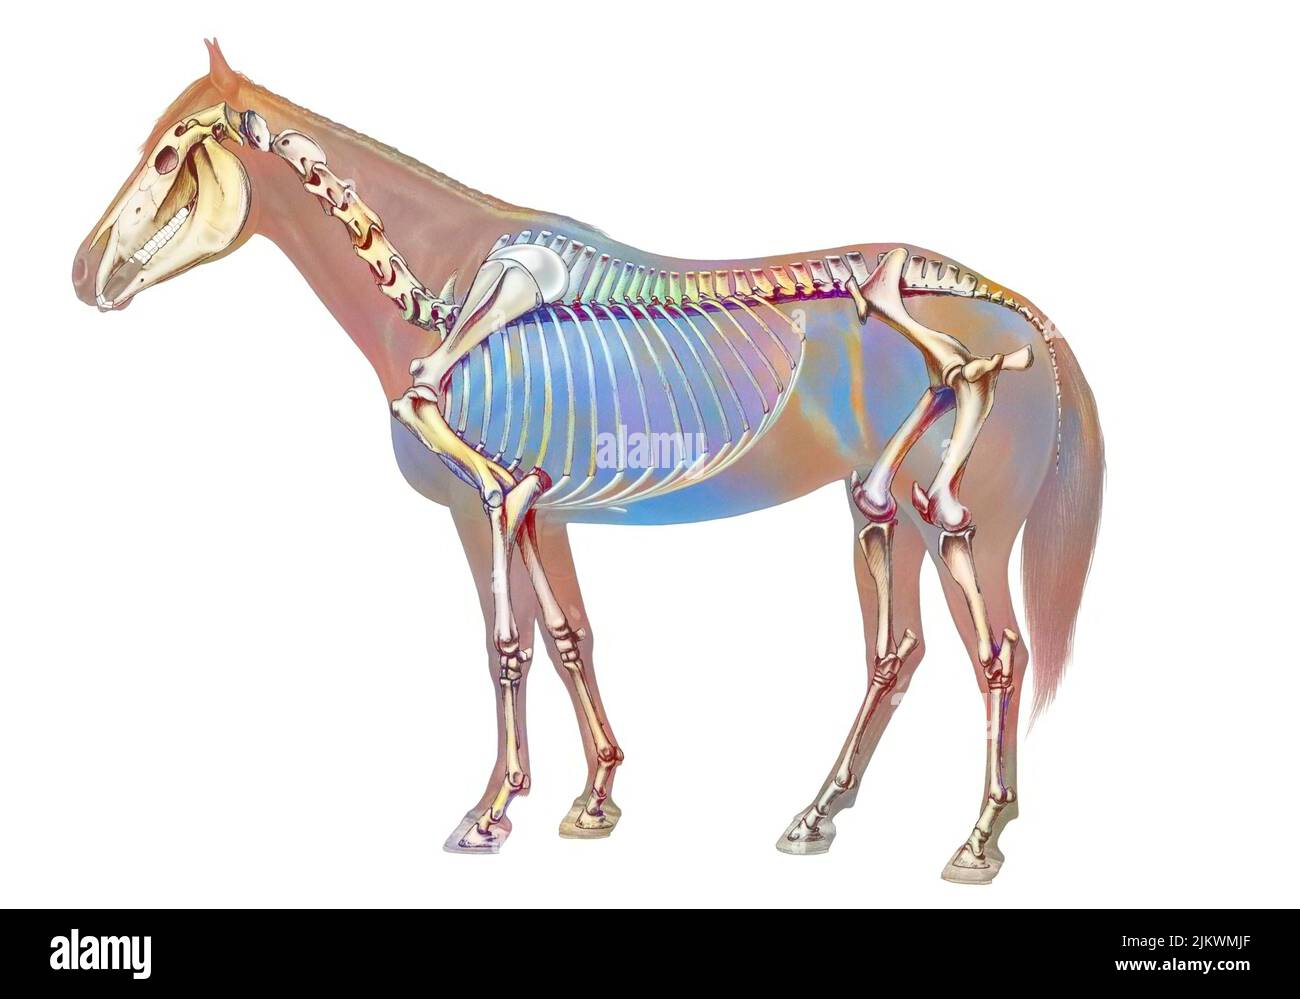 Anatomie du cheval avec son système osseux. Banque D'Images